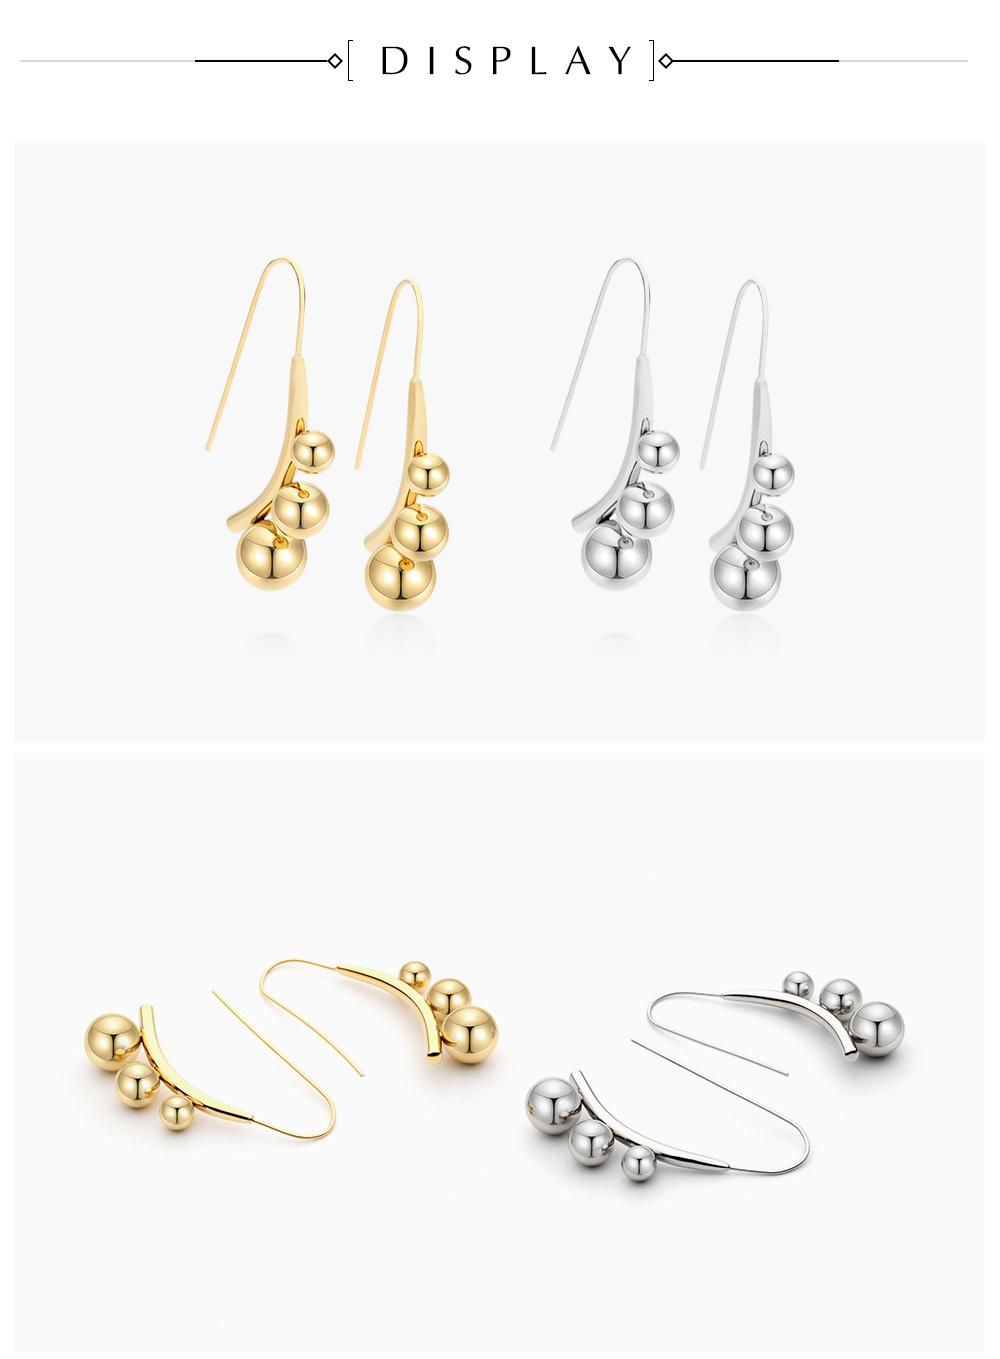 Beautiful Bead Combination Modeling 100% Brass Earrings